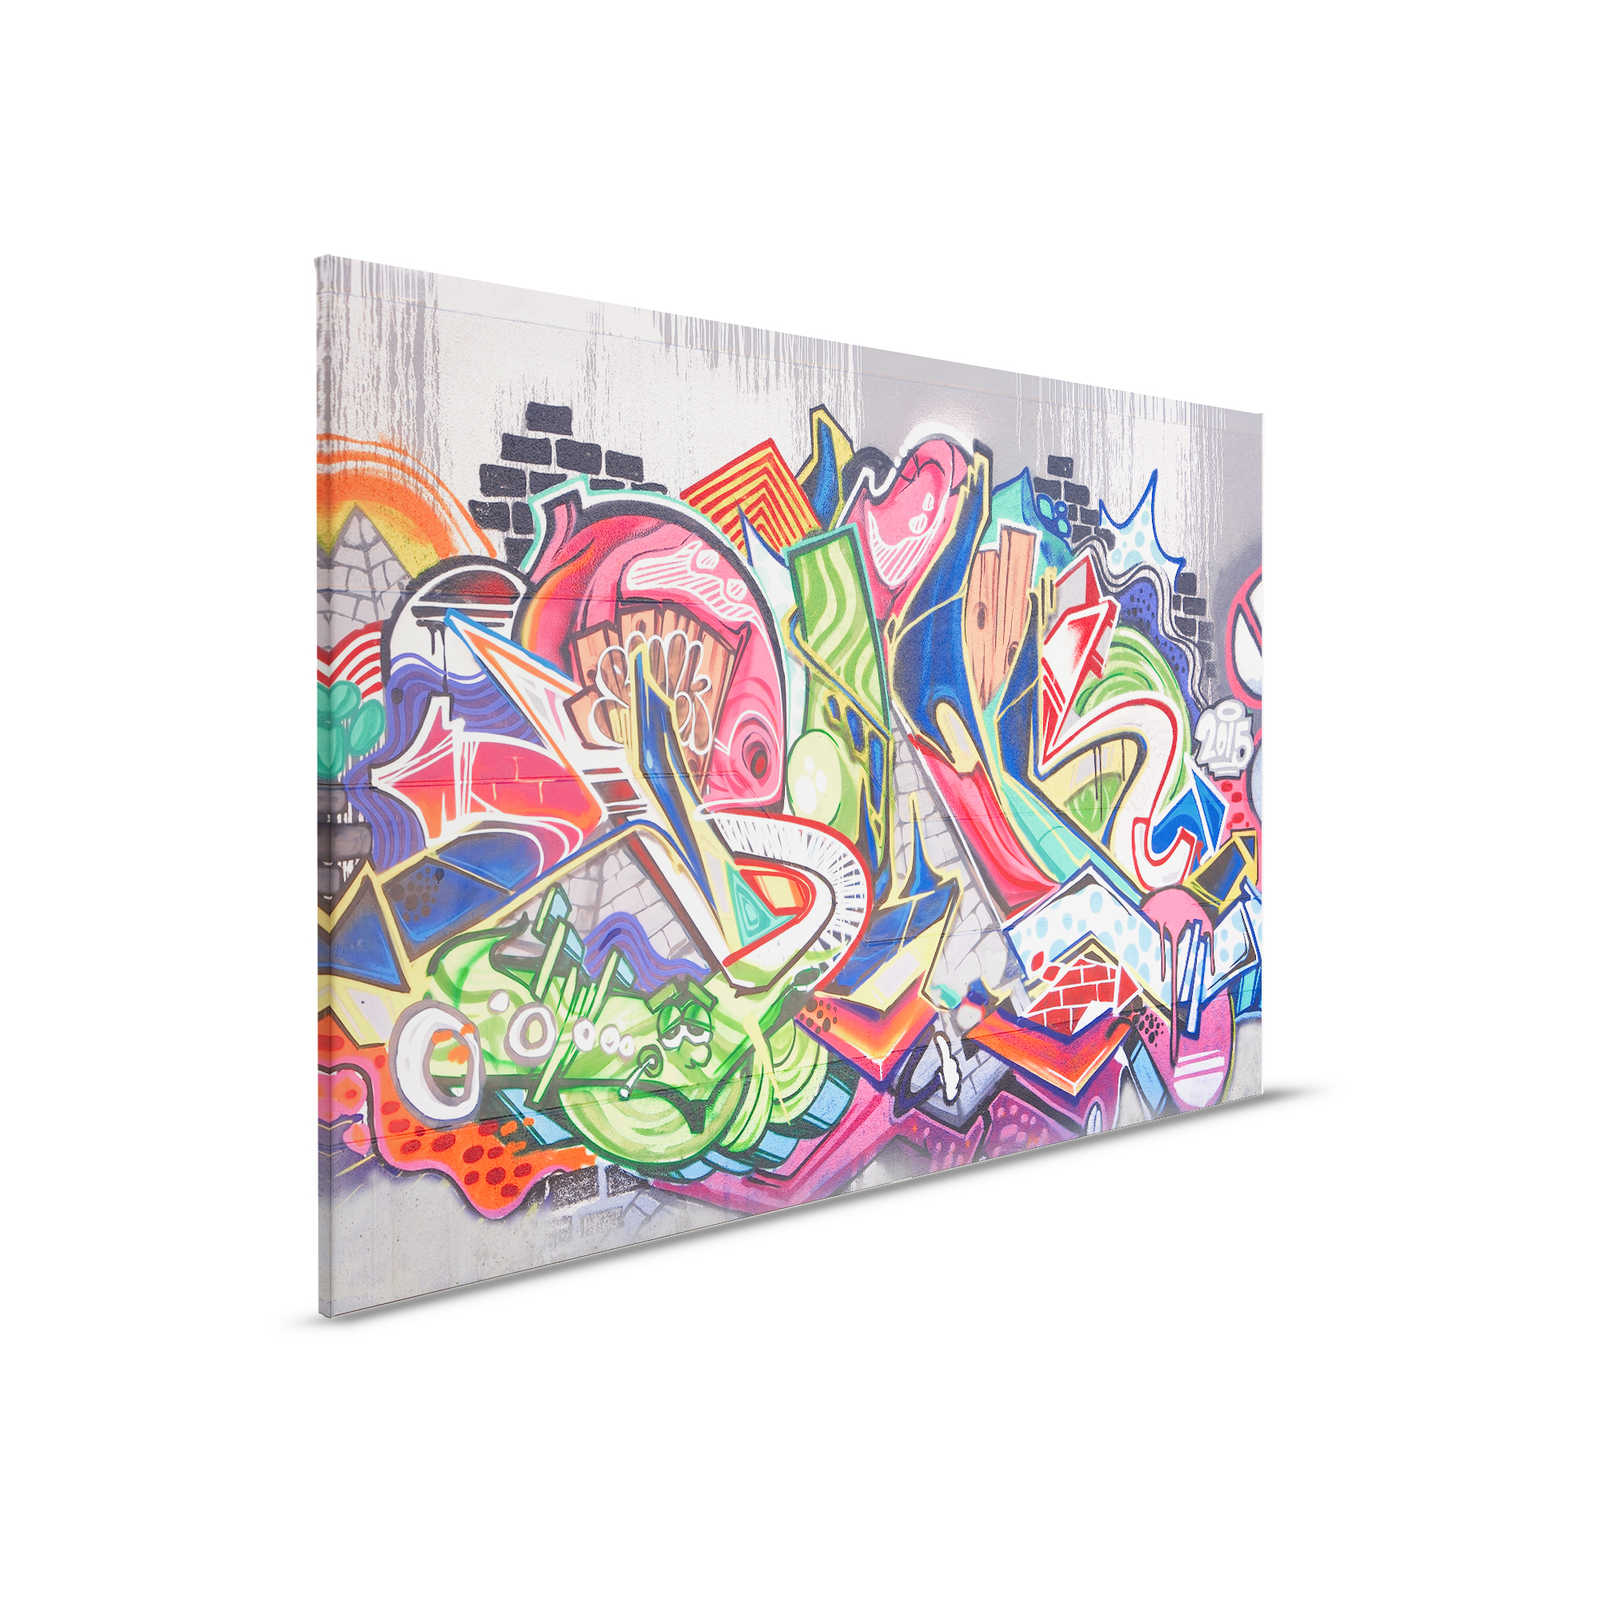         Urban Graffiti Wall Canvas - 0.90 m x 0.60 m
    